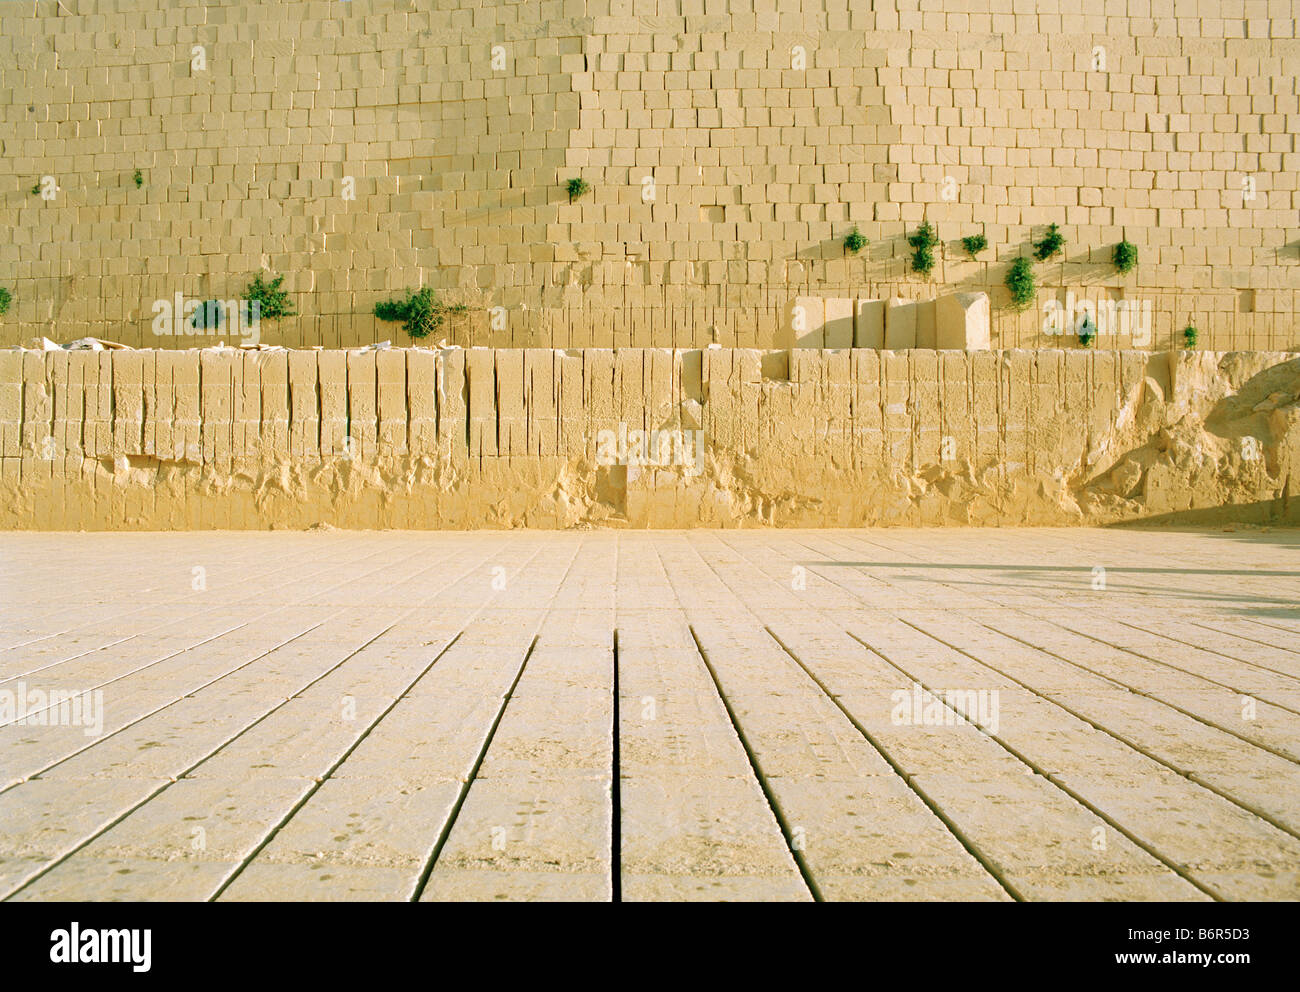 Pozzo in pietra tipica di produzione di Gozo arenarie come materiale da costruzione Steinbruch, für gesägte Sandsteinblöcke typisches Baumaterial Foto Stock